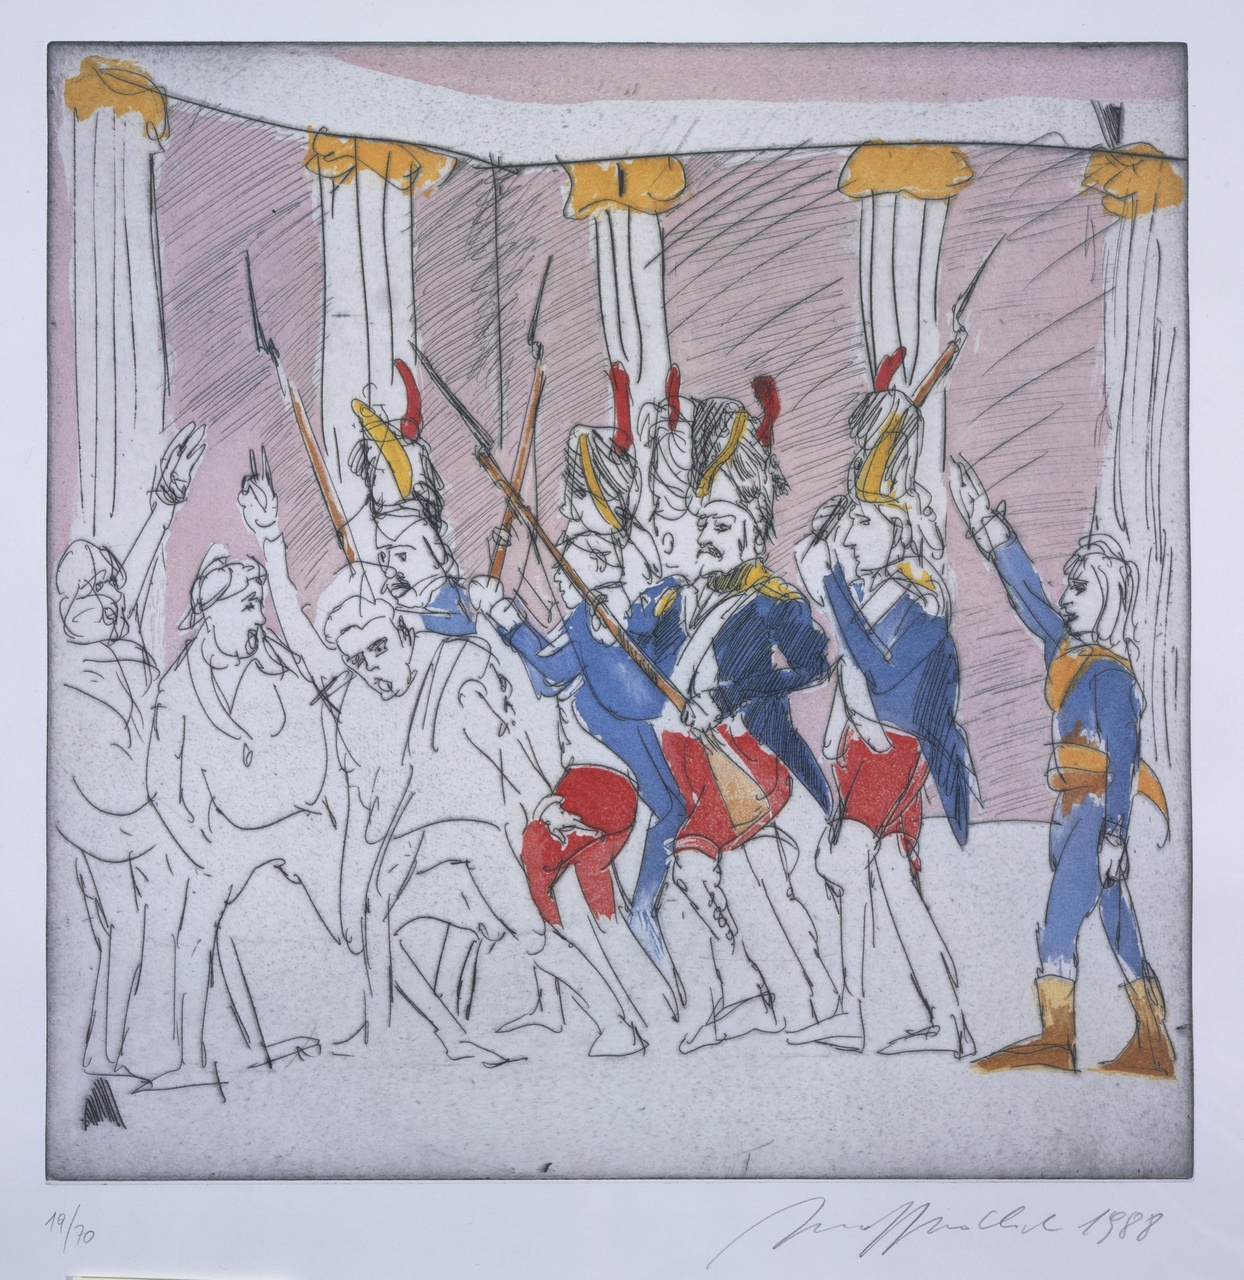 Die Französische Revolution, General Bonaparte in der Versammlung von Saint Cloud am 10. November 1799